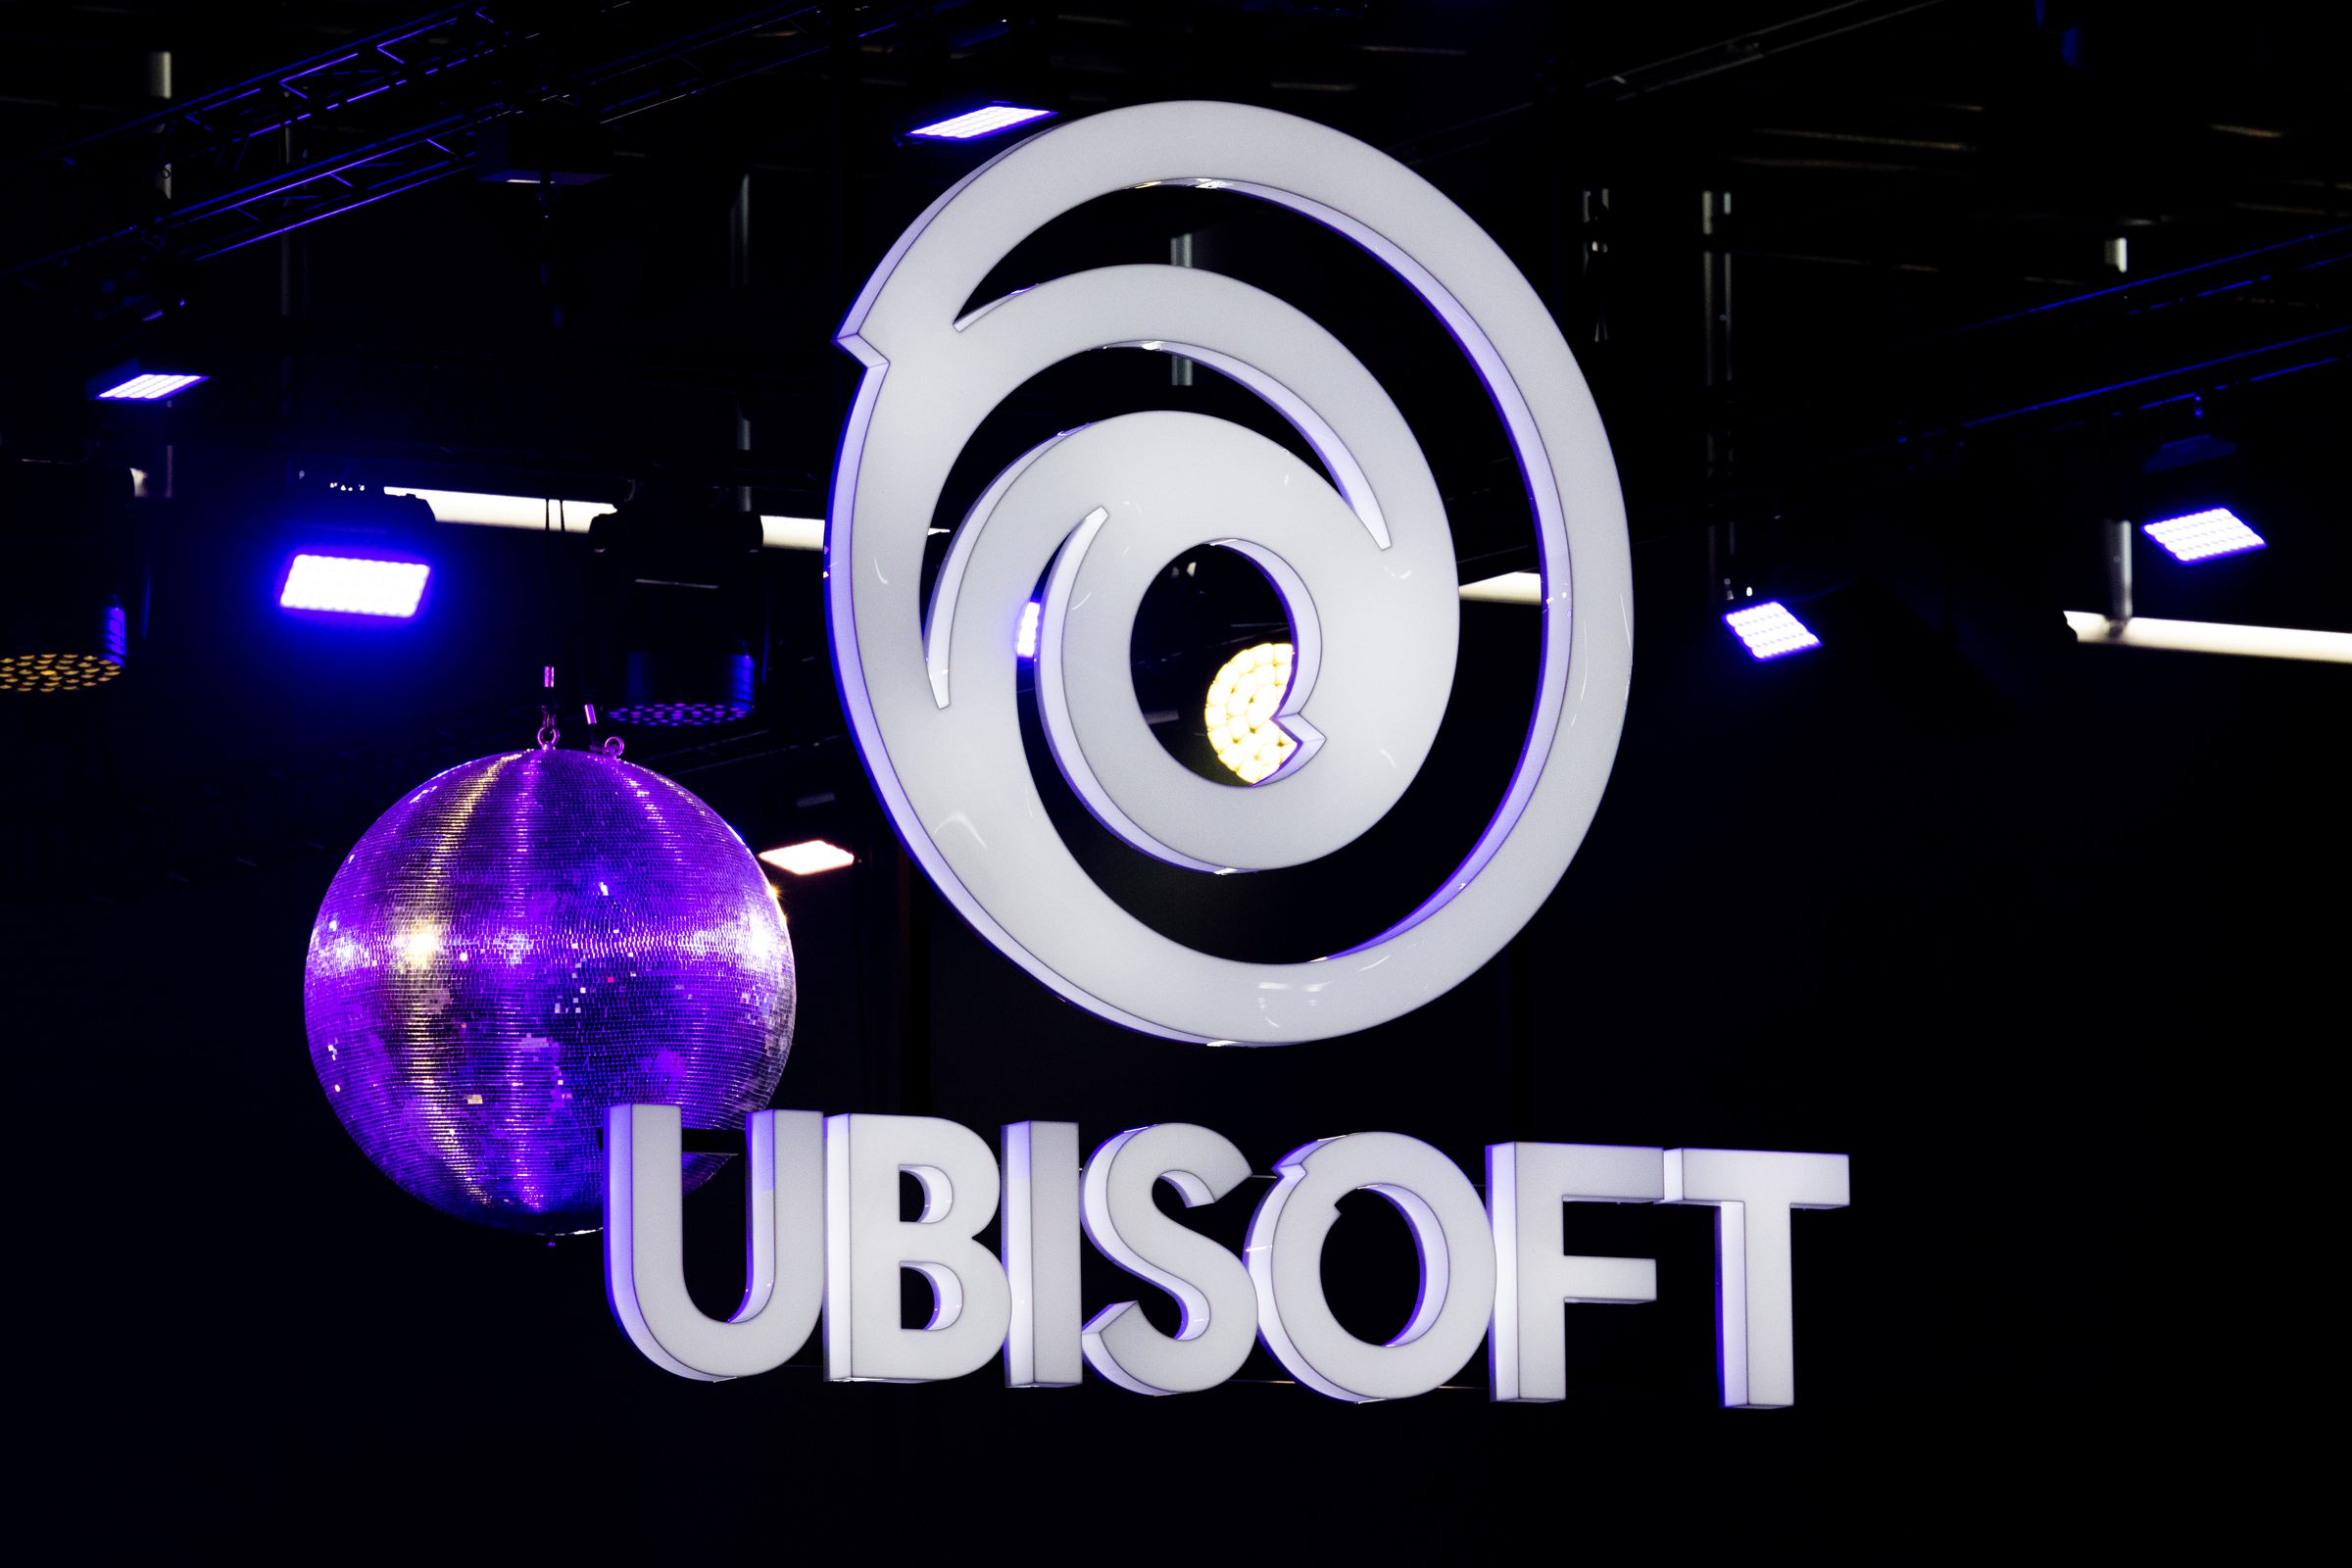 The logo of Ubisoft at Gamescom